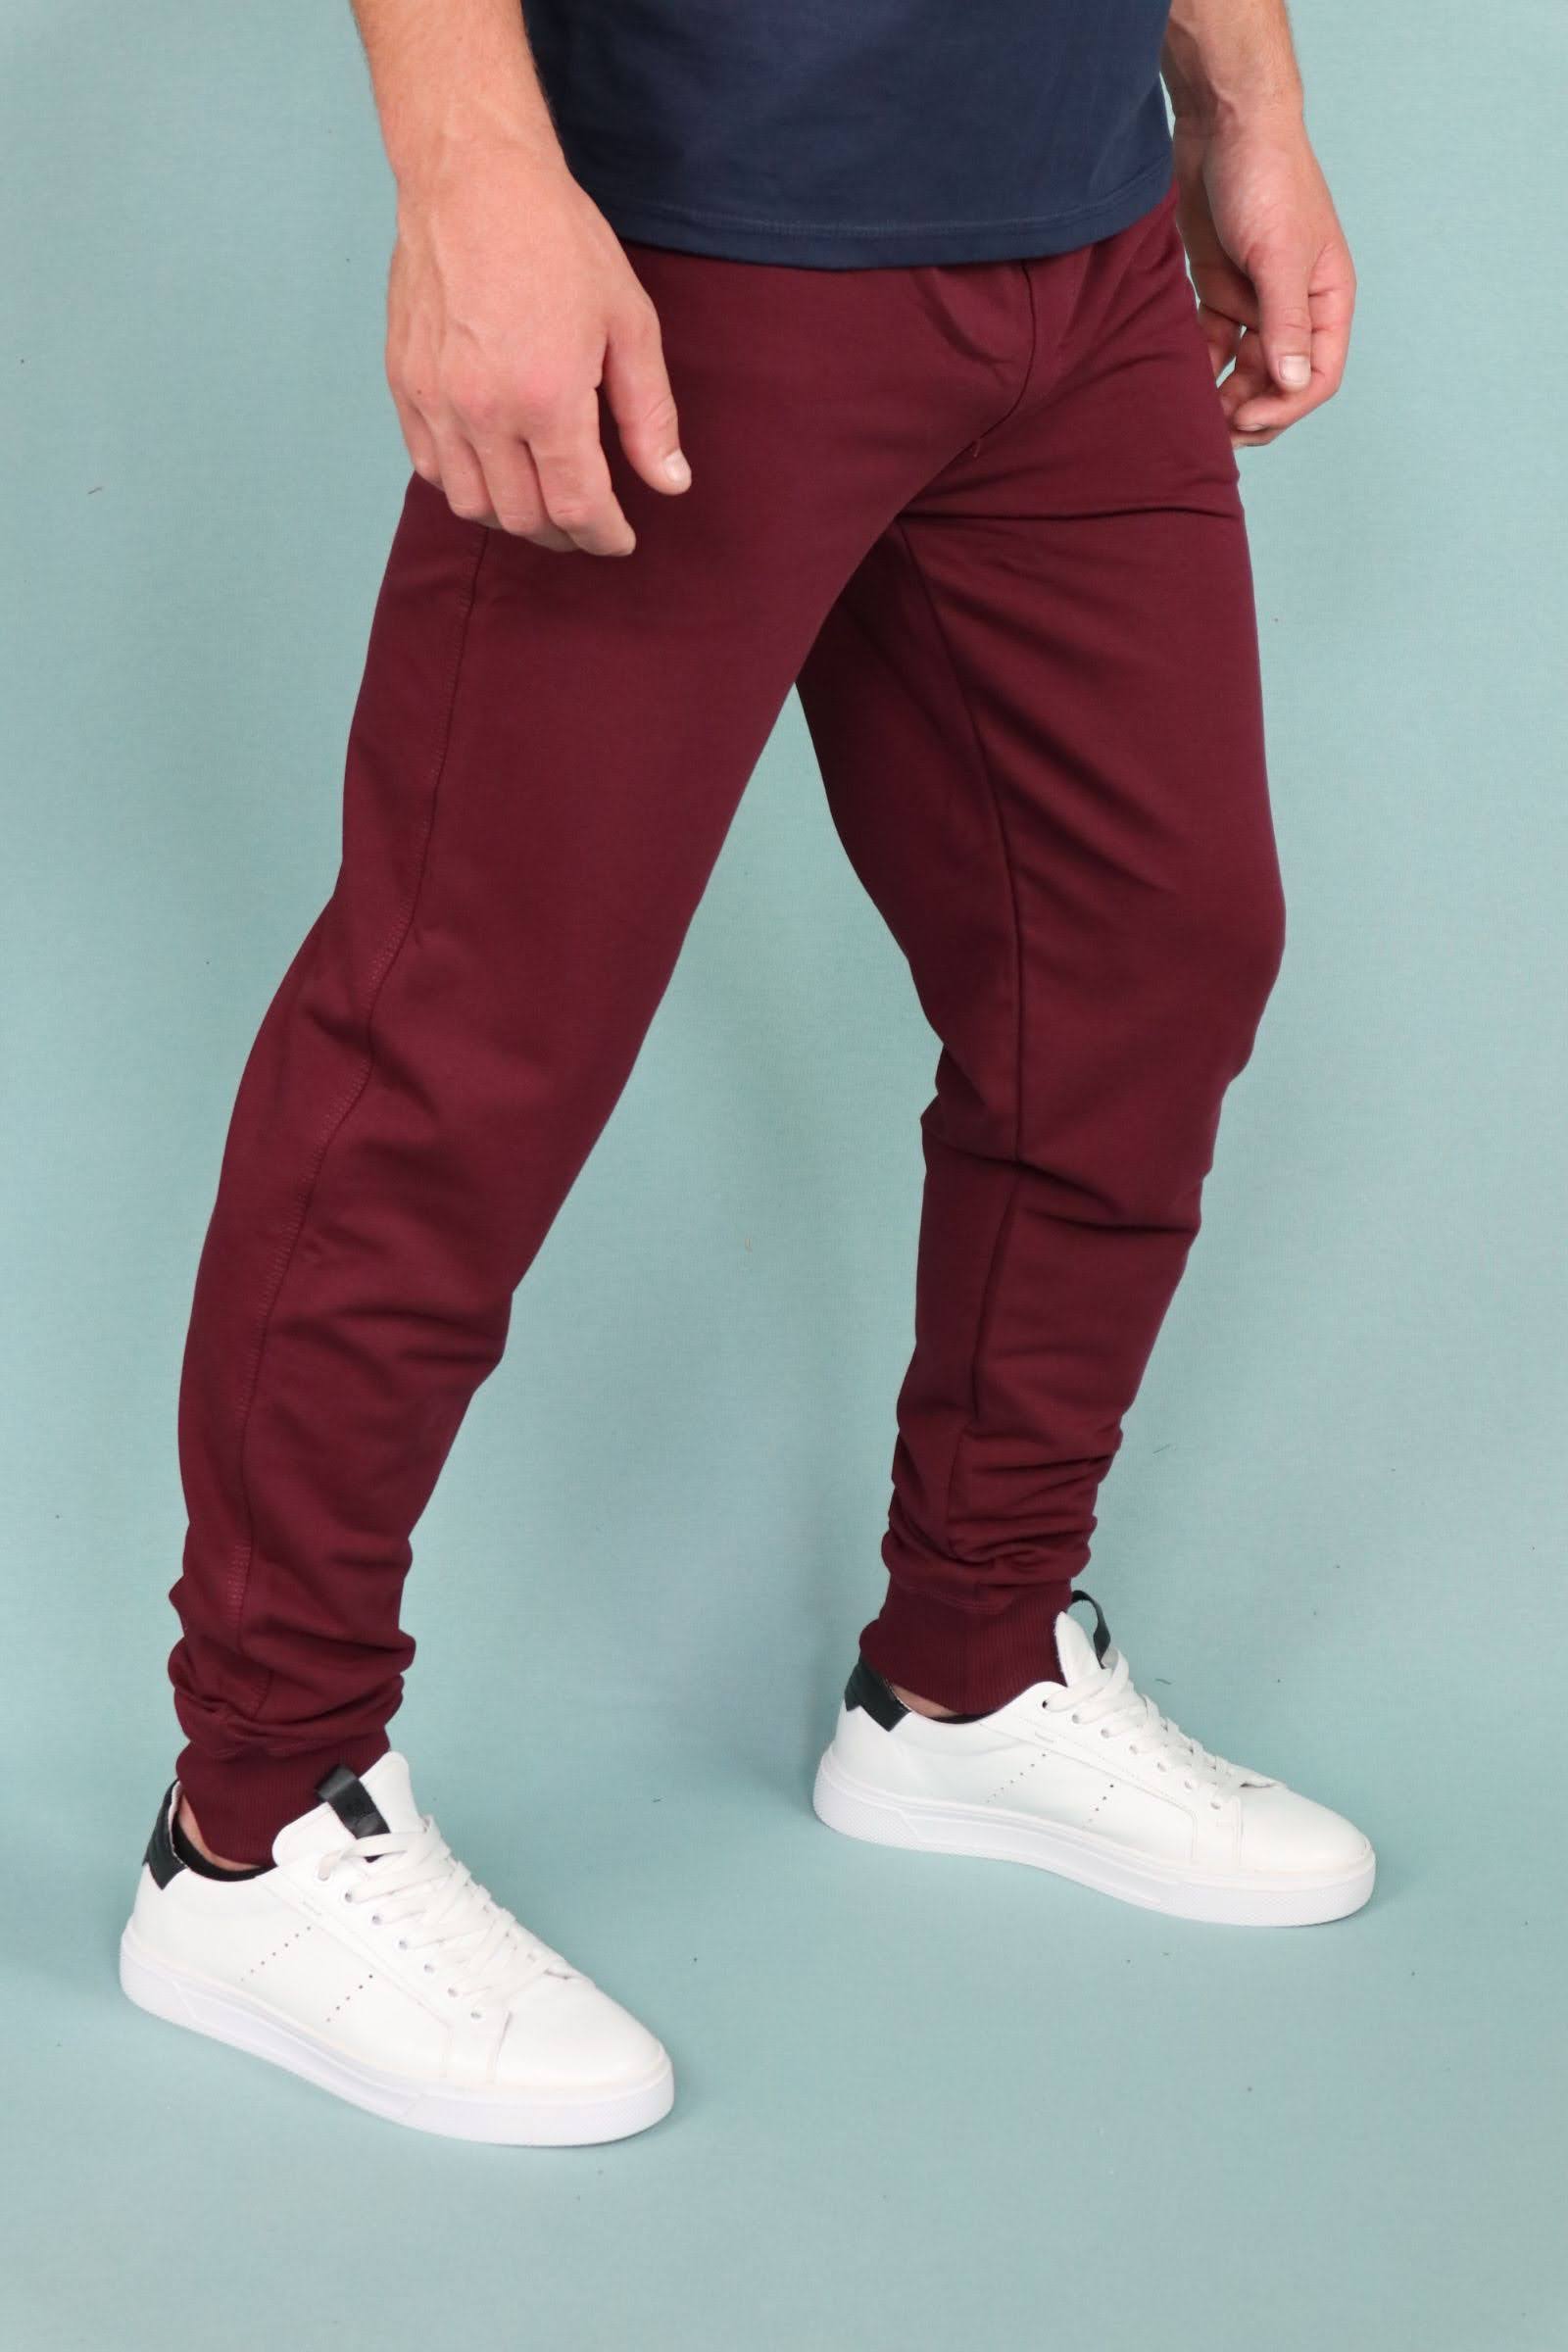 З чим носити бордові чоловічі брюки? 3 пропозиції щодо модних стилів